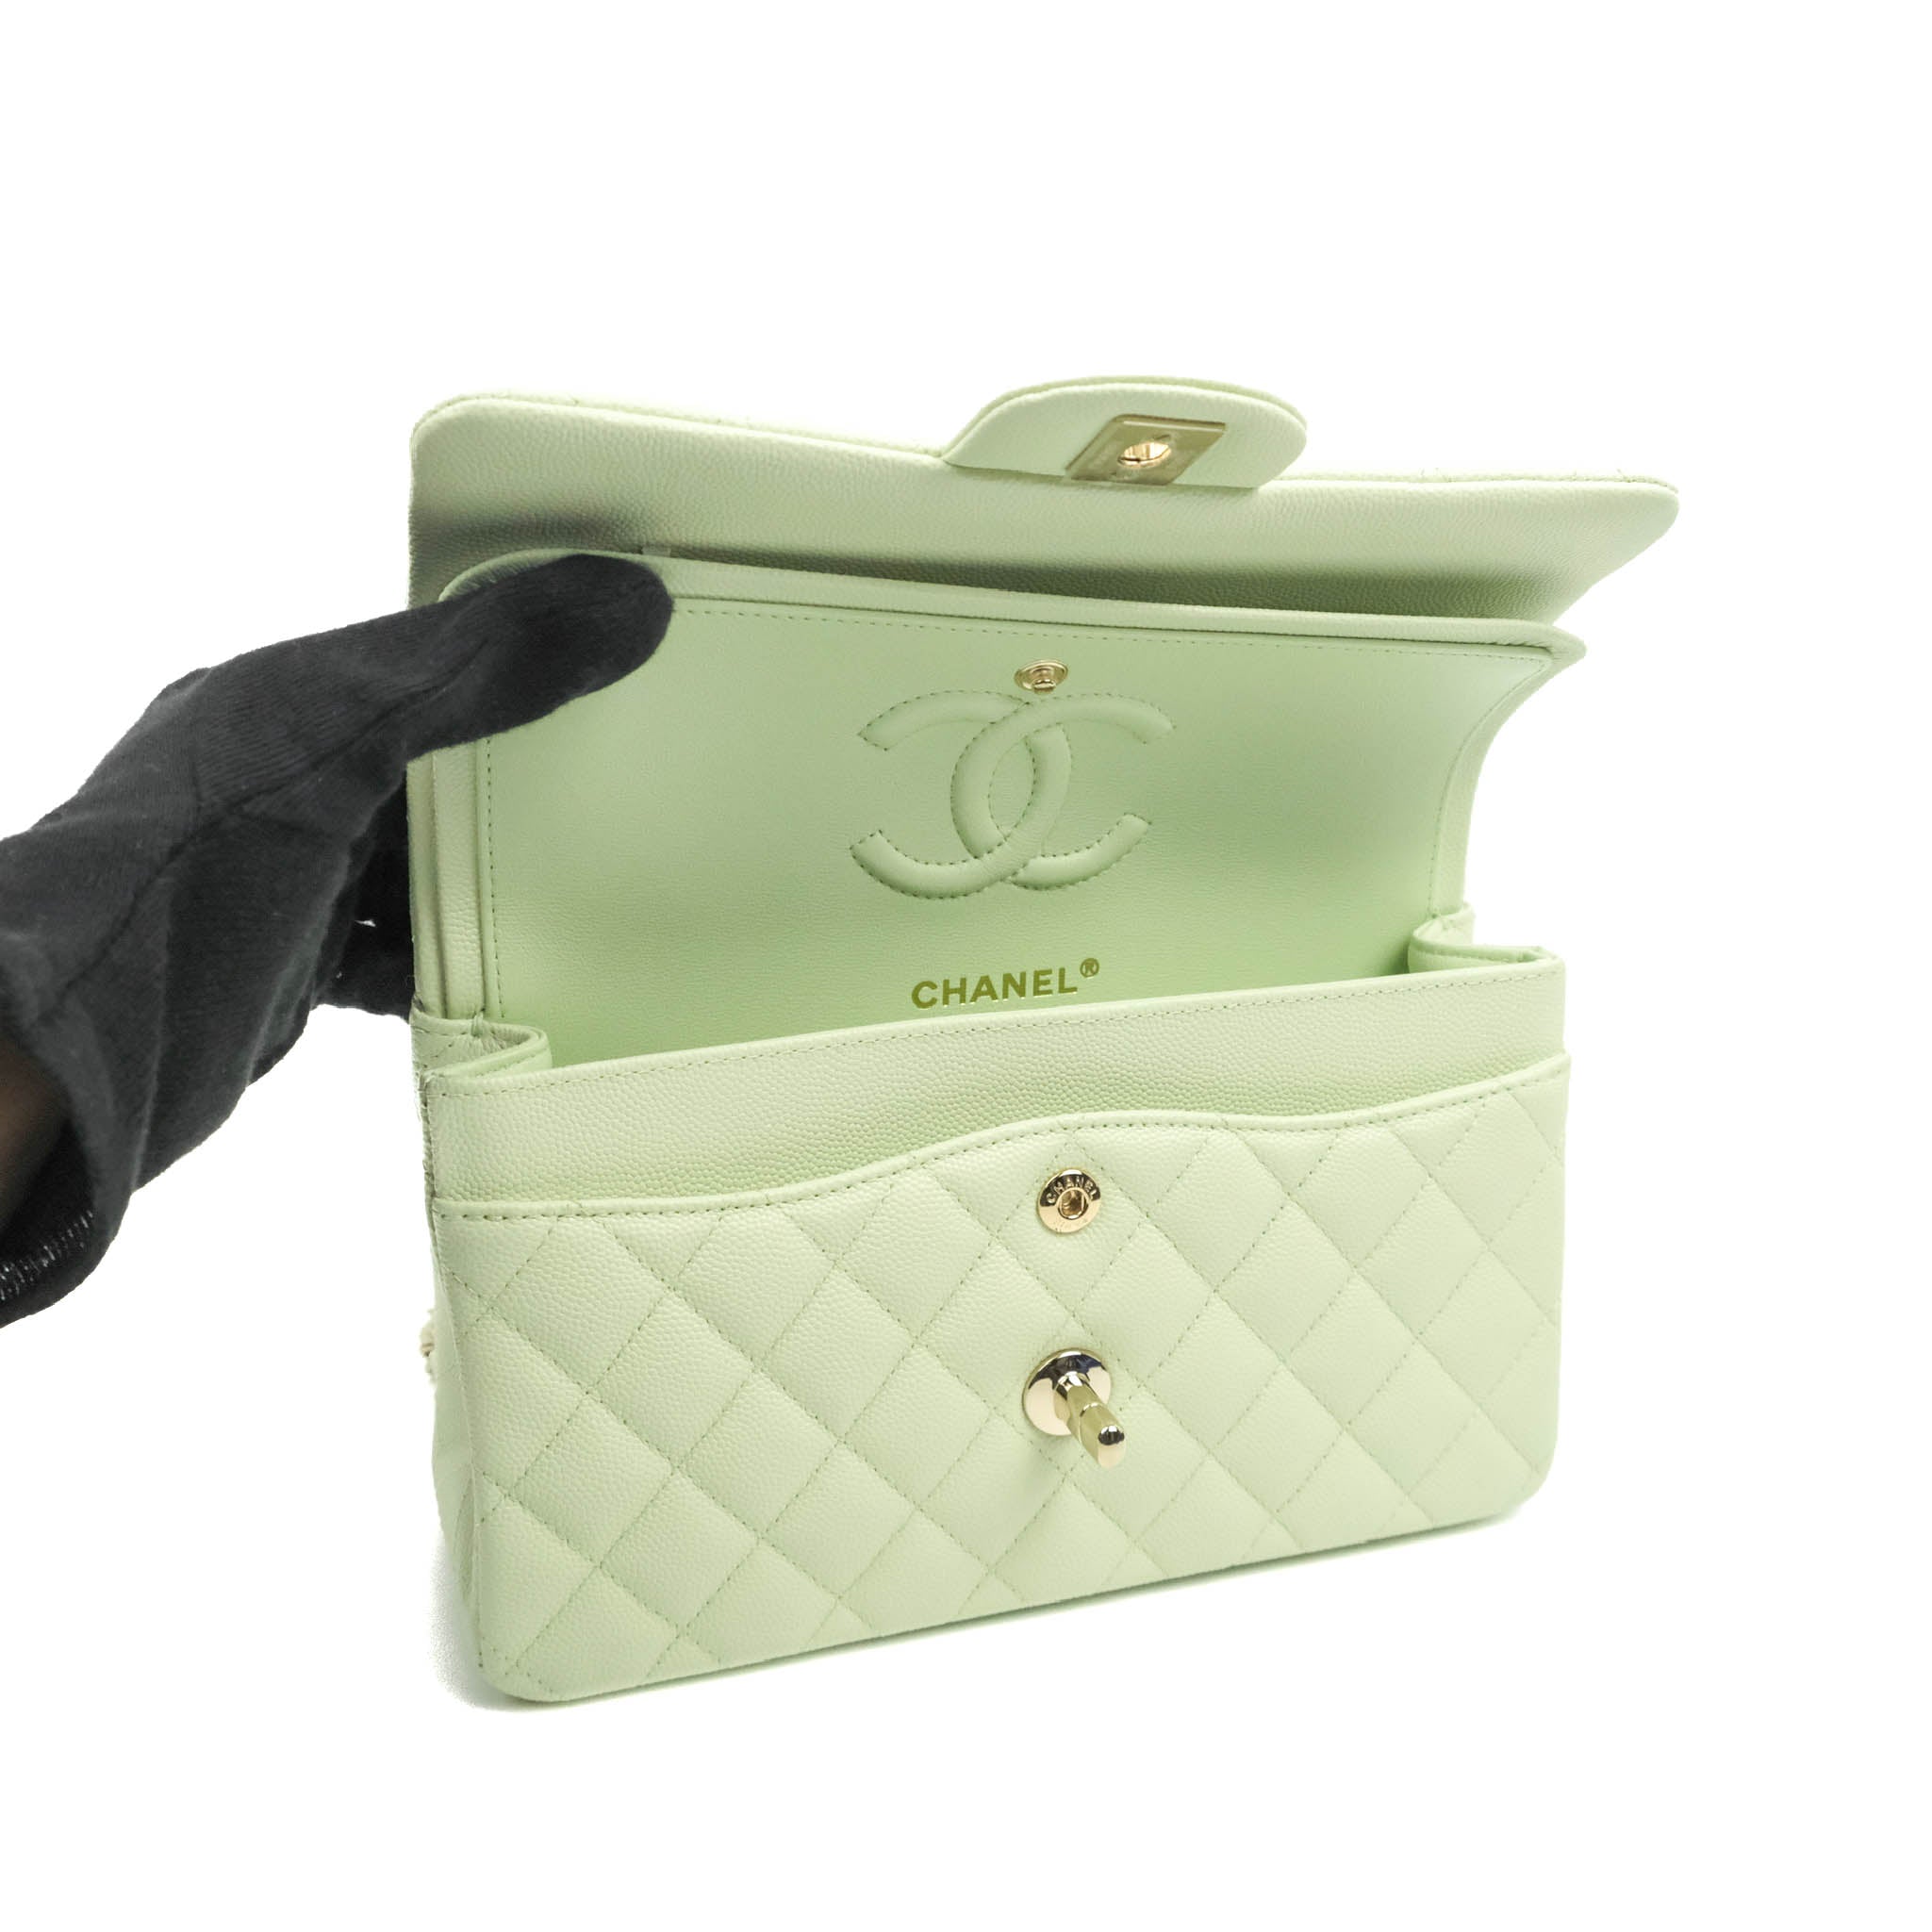 CHANEL 21C Mint Green Mini Rectangular Flap Bag Lt Gold Hw